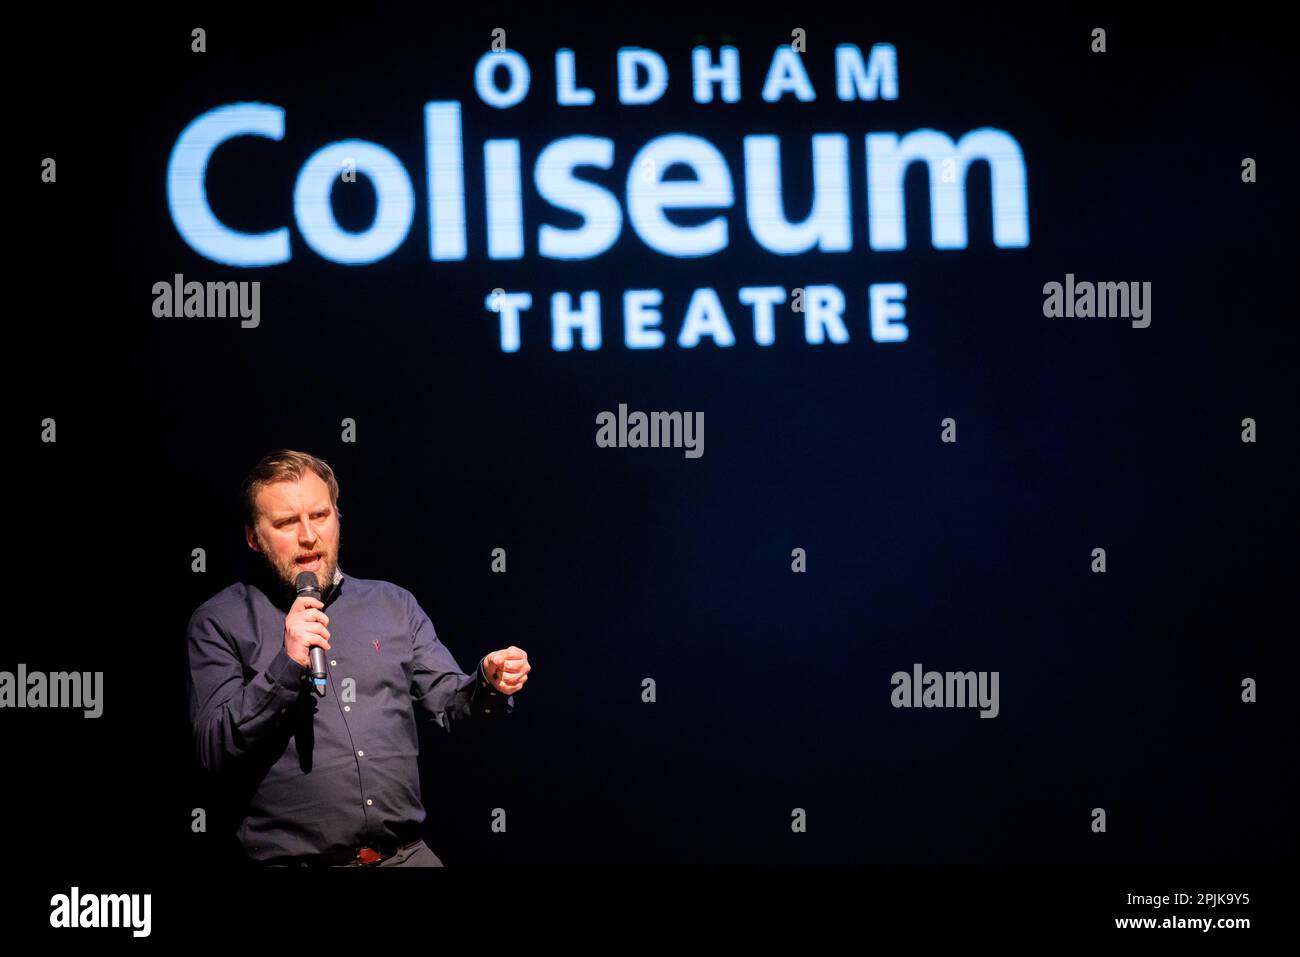 Oldham Coliseum Theatre letzte Vorstellung - 31. März 2023. Chris Lawson, Chefgeschäftsführer und künstlerischer Direktor des Oldham Coliseum Theatre. Stockfoto